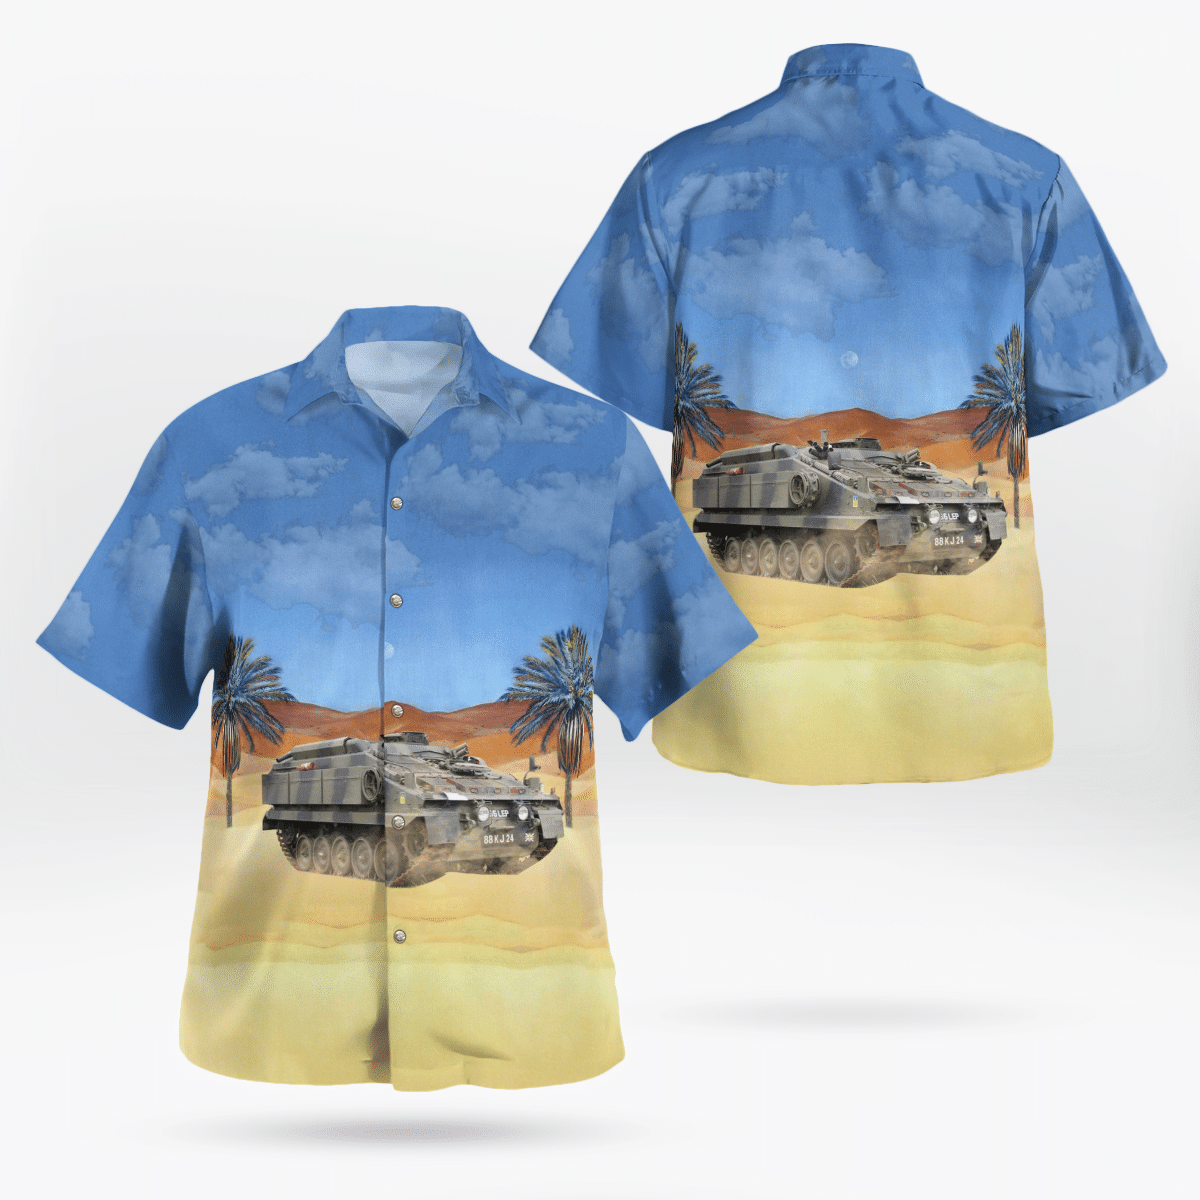 You won't regret buying these Aloha Shirt 70